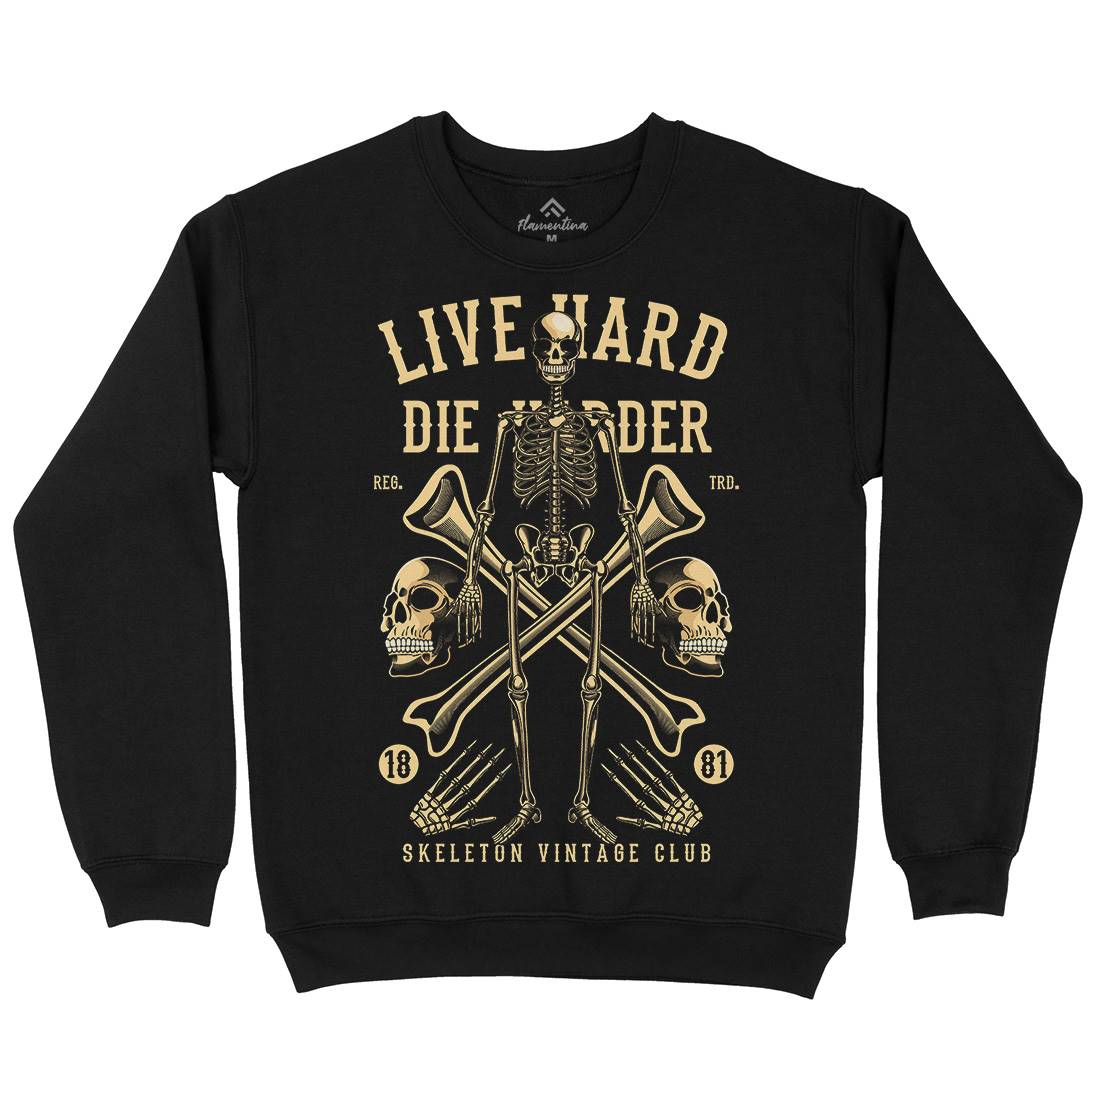 Live Hard Die Harder Mens Crew Neck Sweatshirt Retro C387